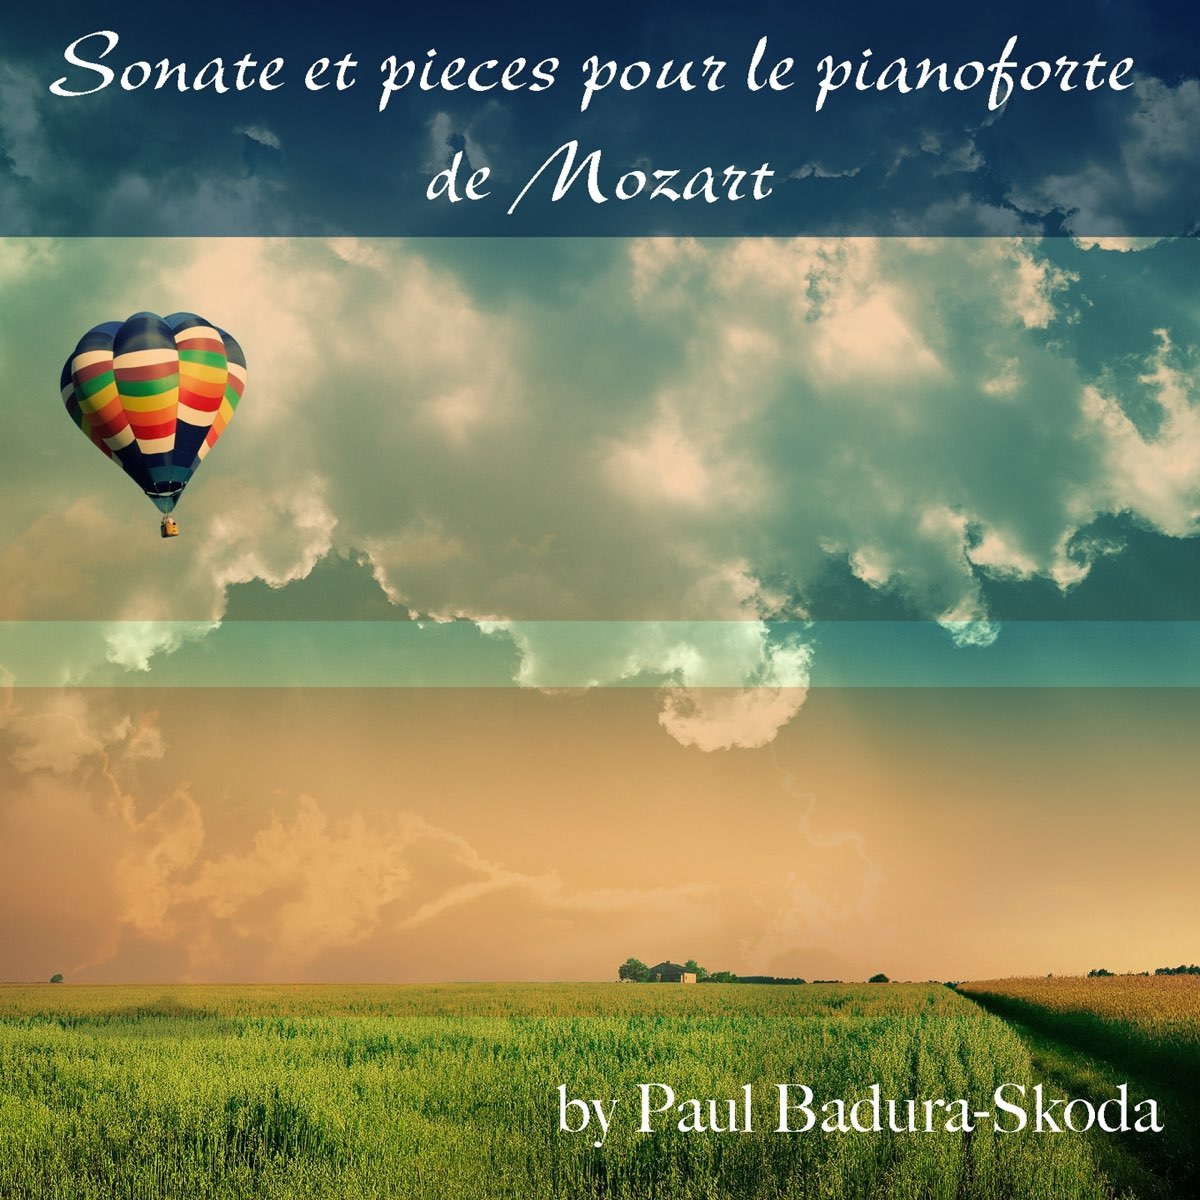 Sonate et pieces pour le pianoforte de Mozart by Paul Badura-Skoda on Apple  Music